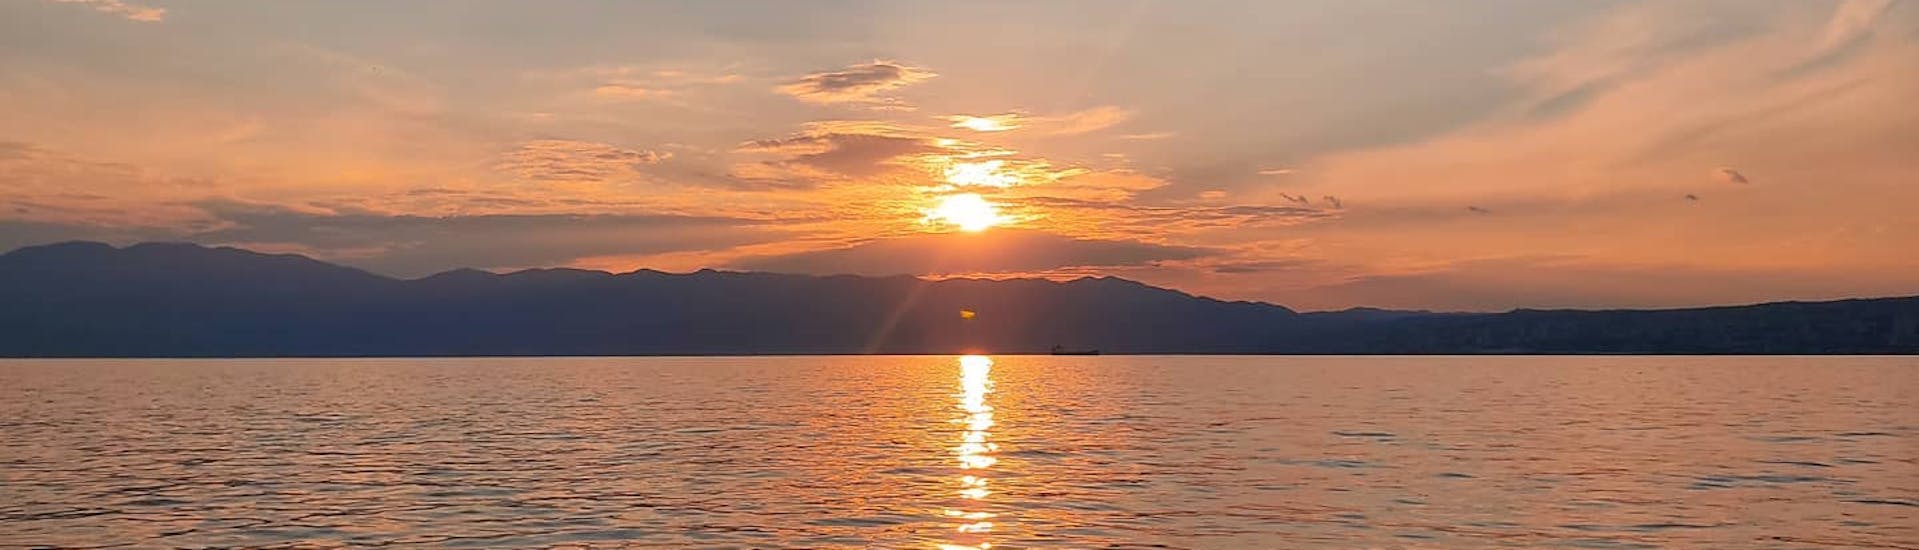 Un coucher de soleil pendant la Location de bateau dans la baie de Kvarner (jusqu'à 8 pers.) avec ML Aquatics Opatija.